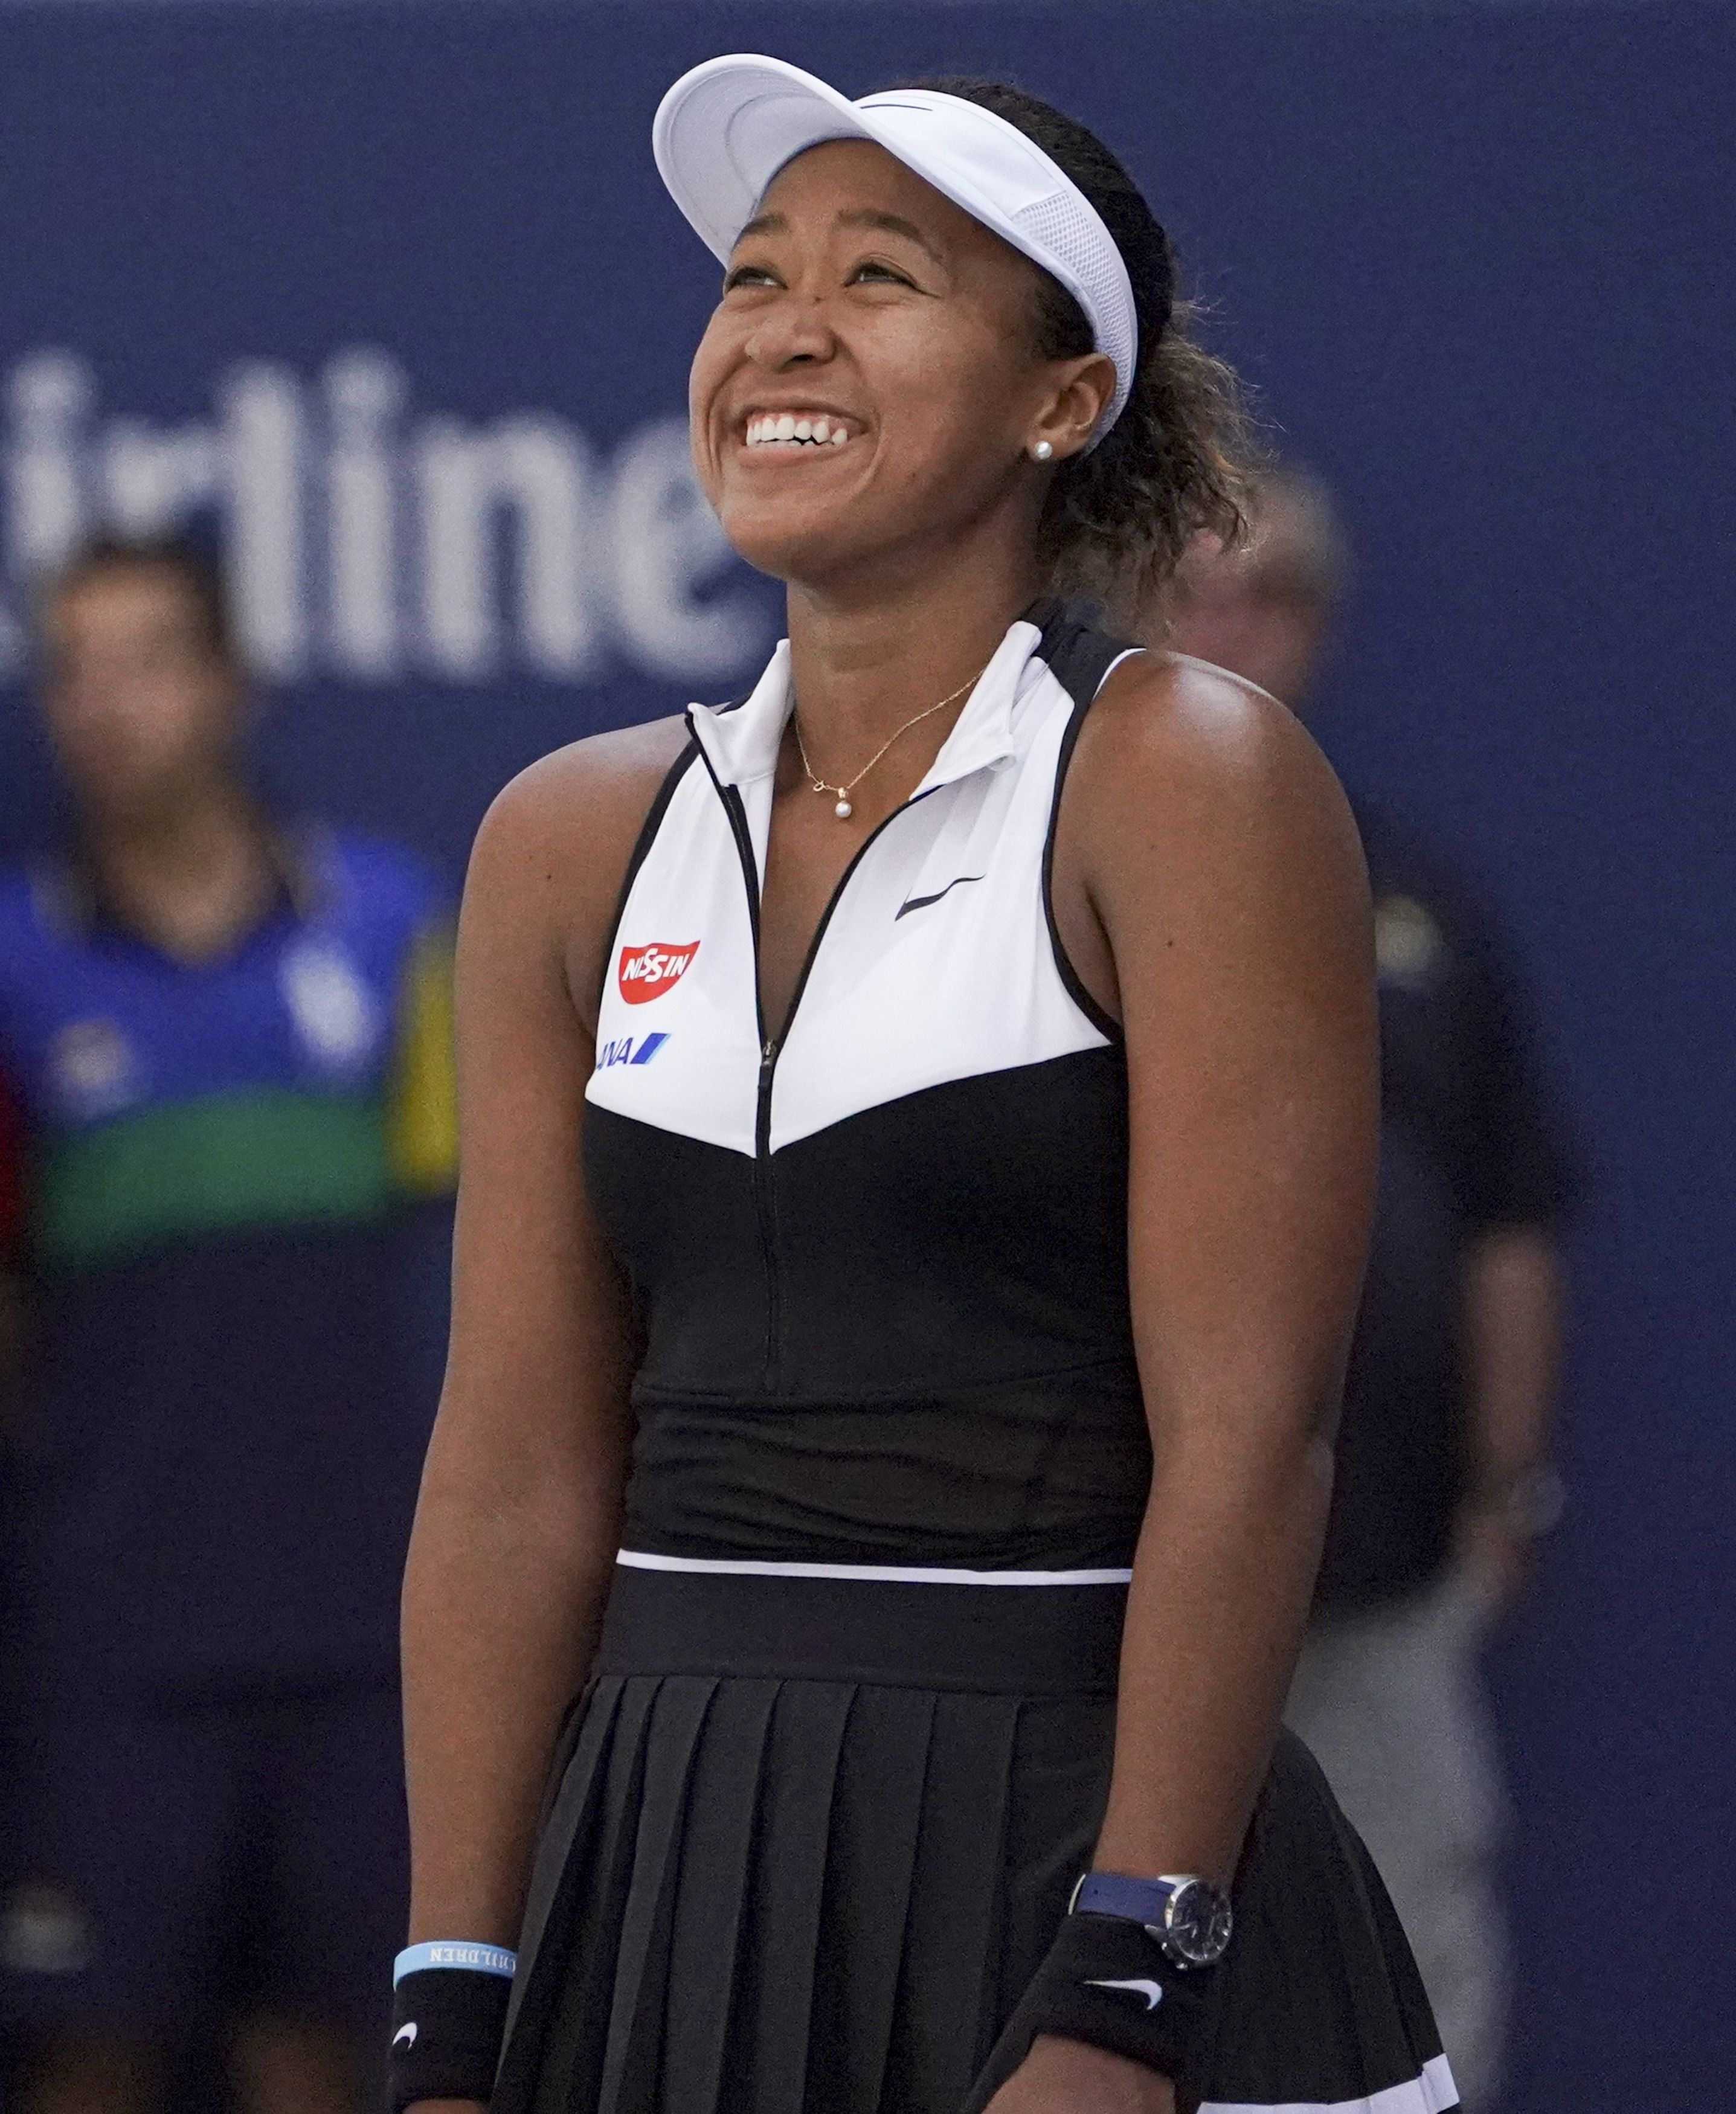 Naomi smiling on the tennis court